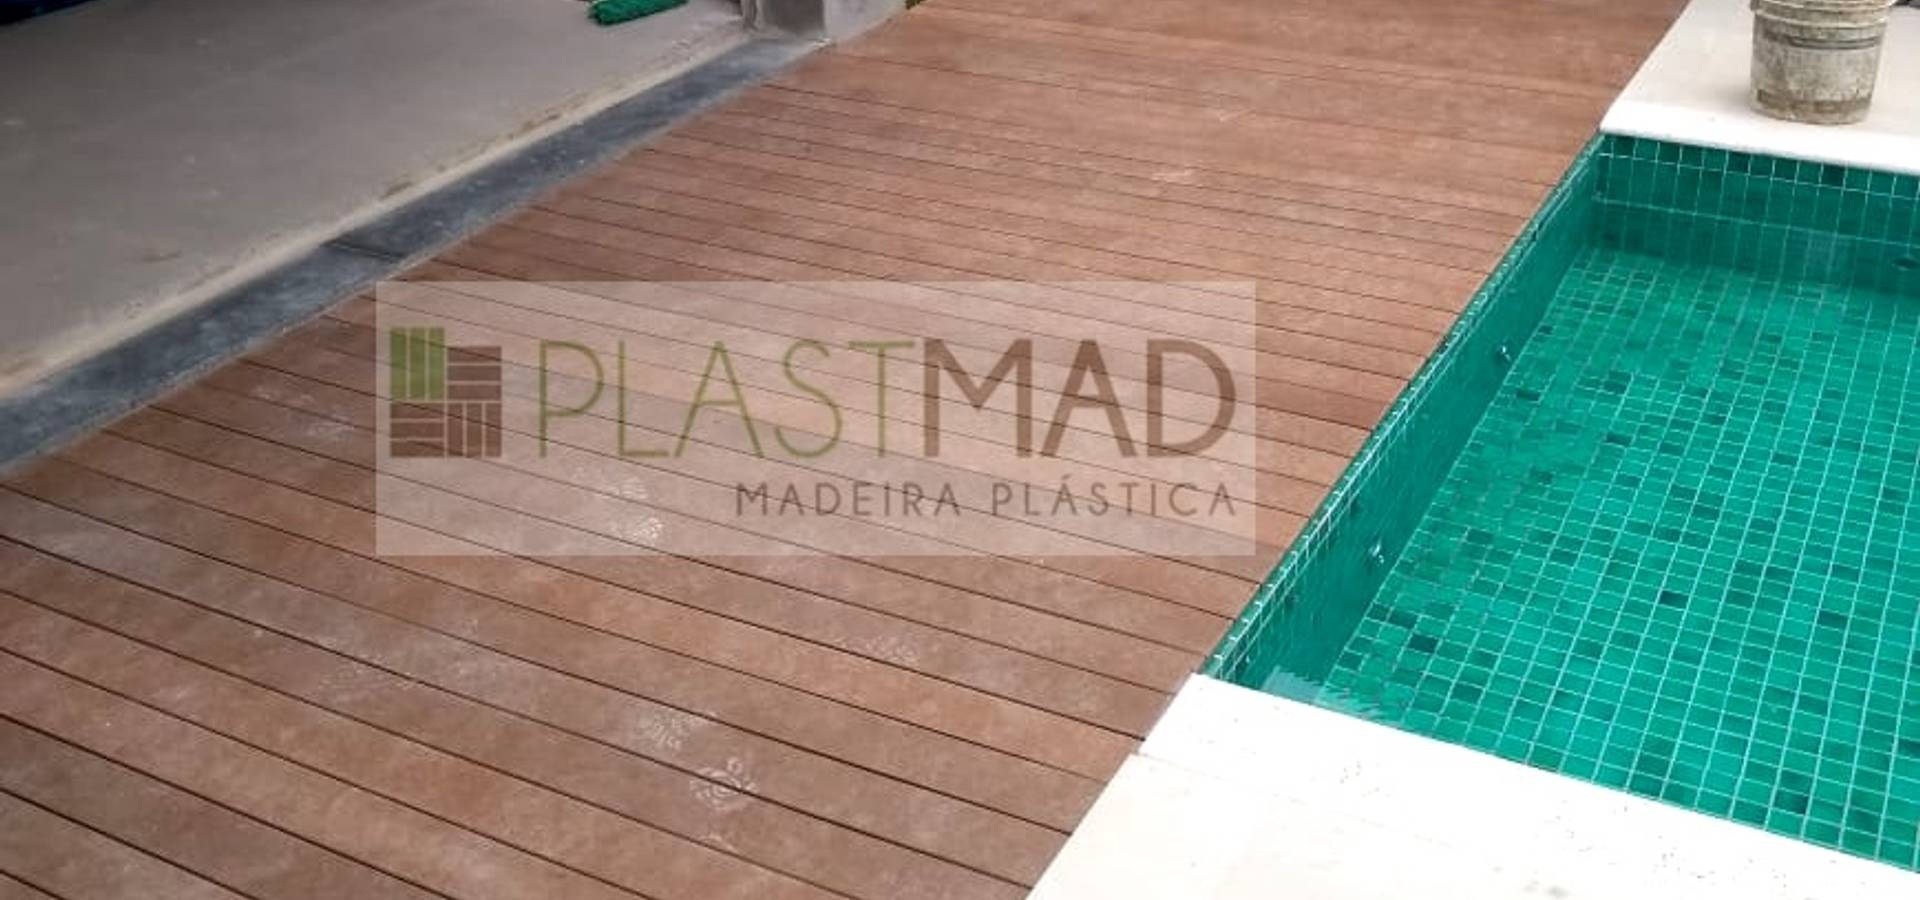 Plastmad – Madeira Plástica